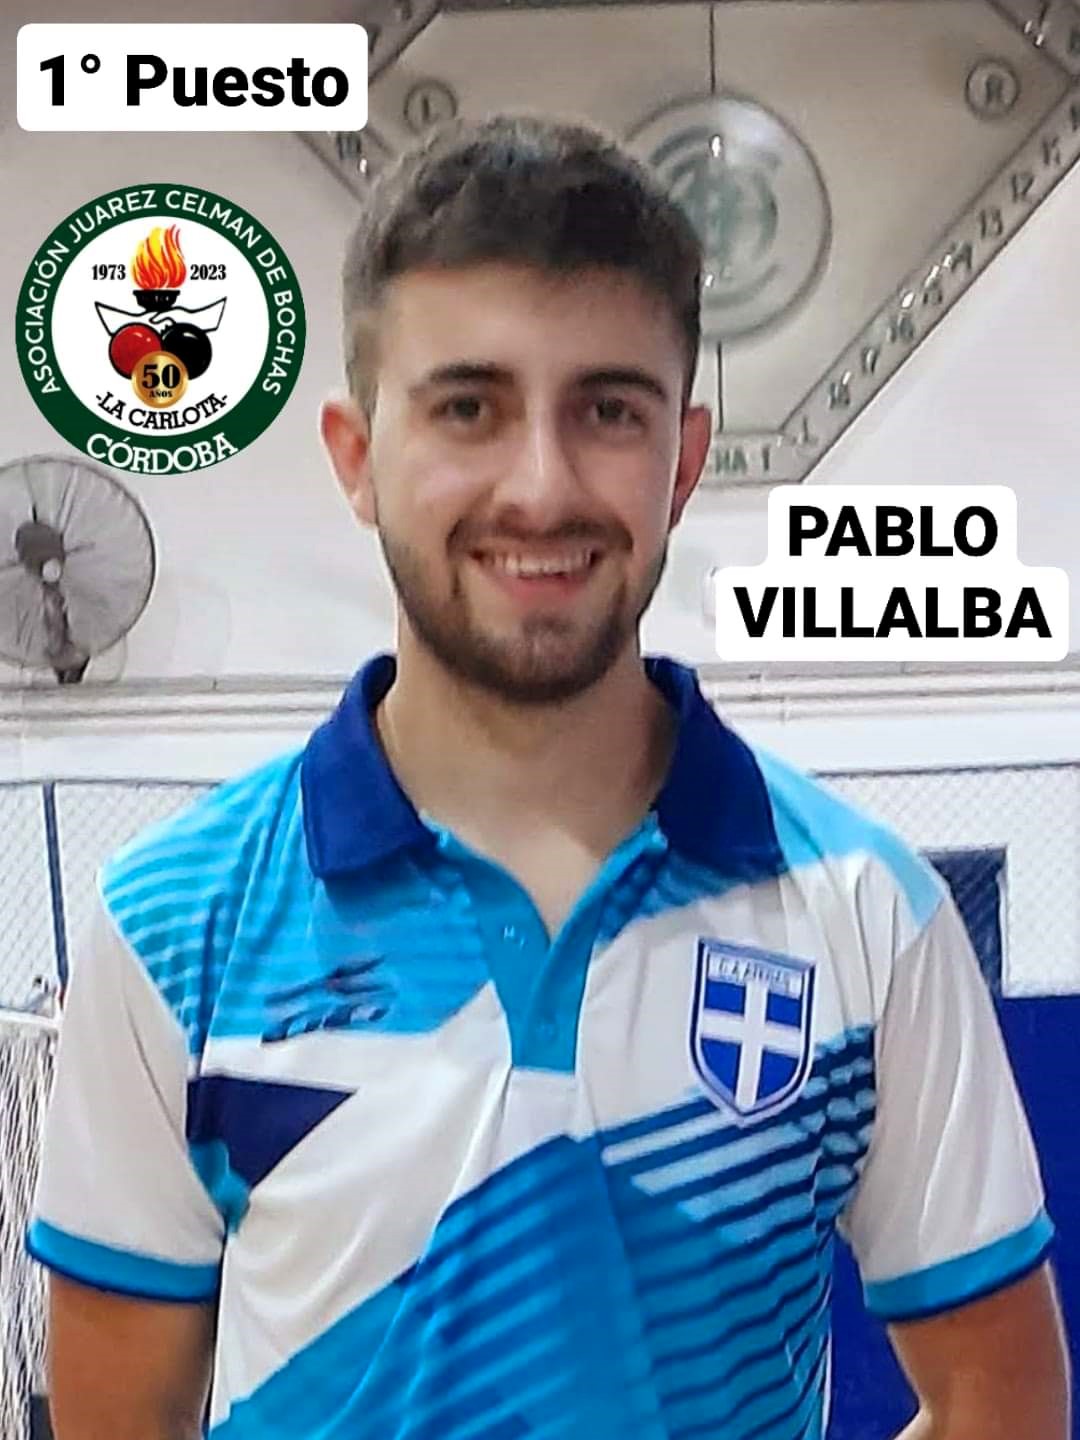 Pablo Villalba 1puesto